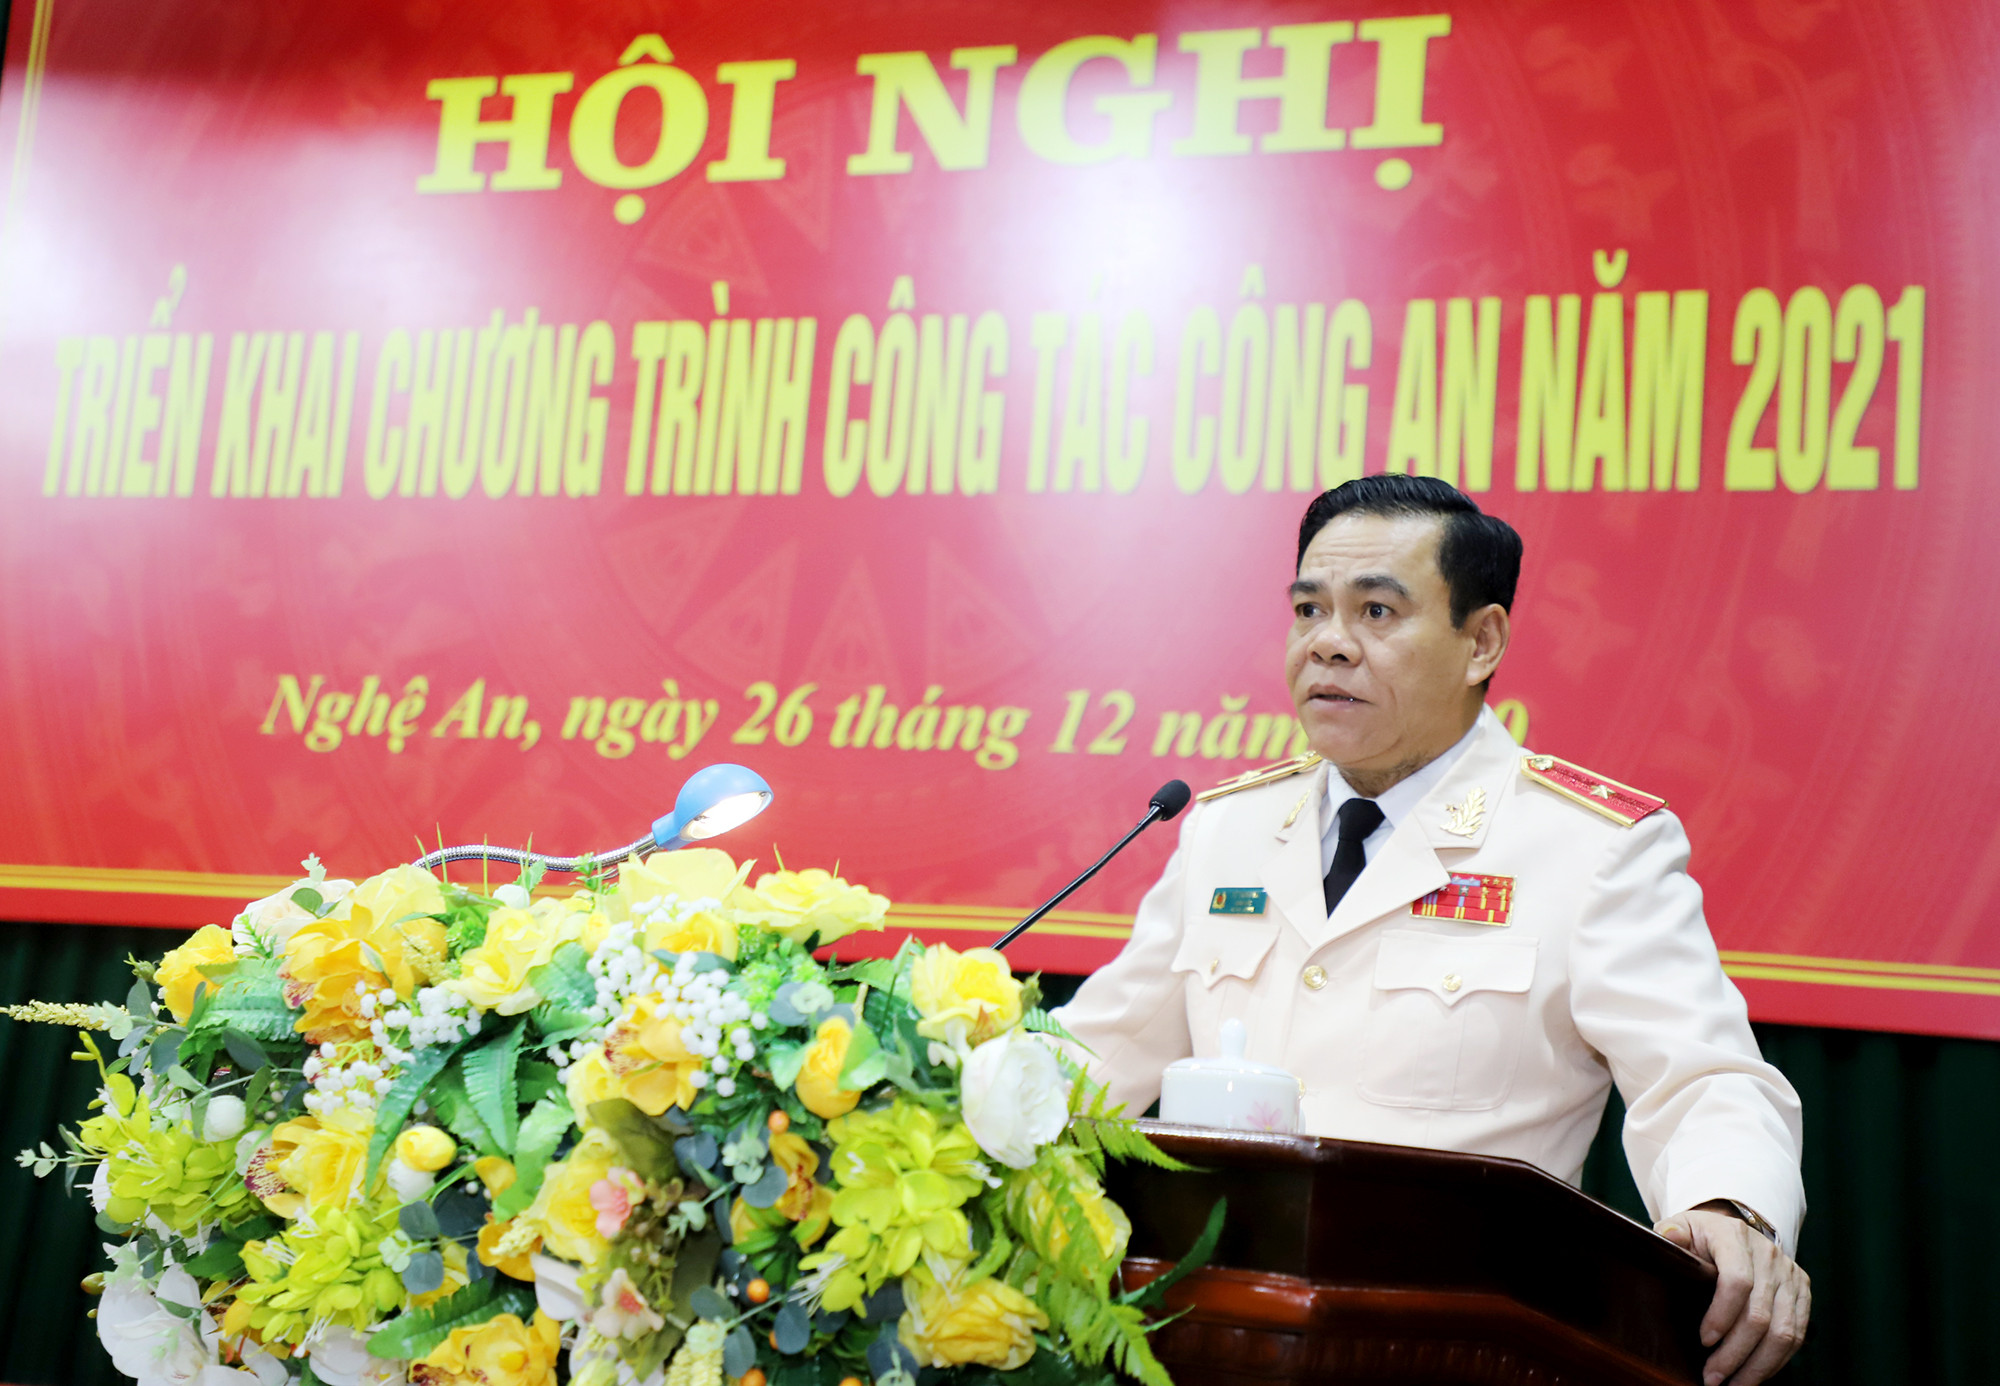 Thiếu tướng Võ Trọng Hải - Giám đốc Công an tỉnh Nghệ An phát biểu tại Hội nghị. Ảnh: Phạm Bằng